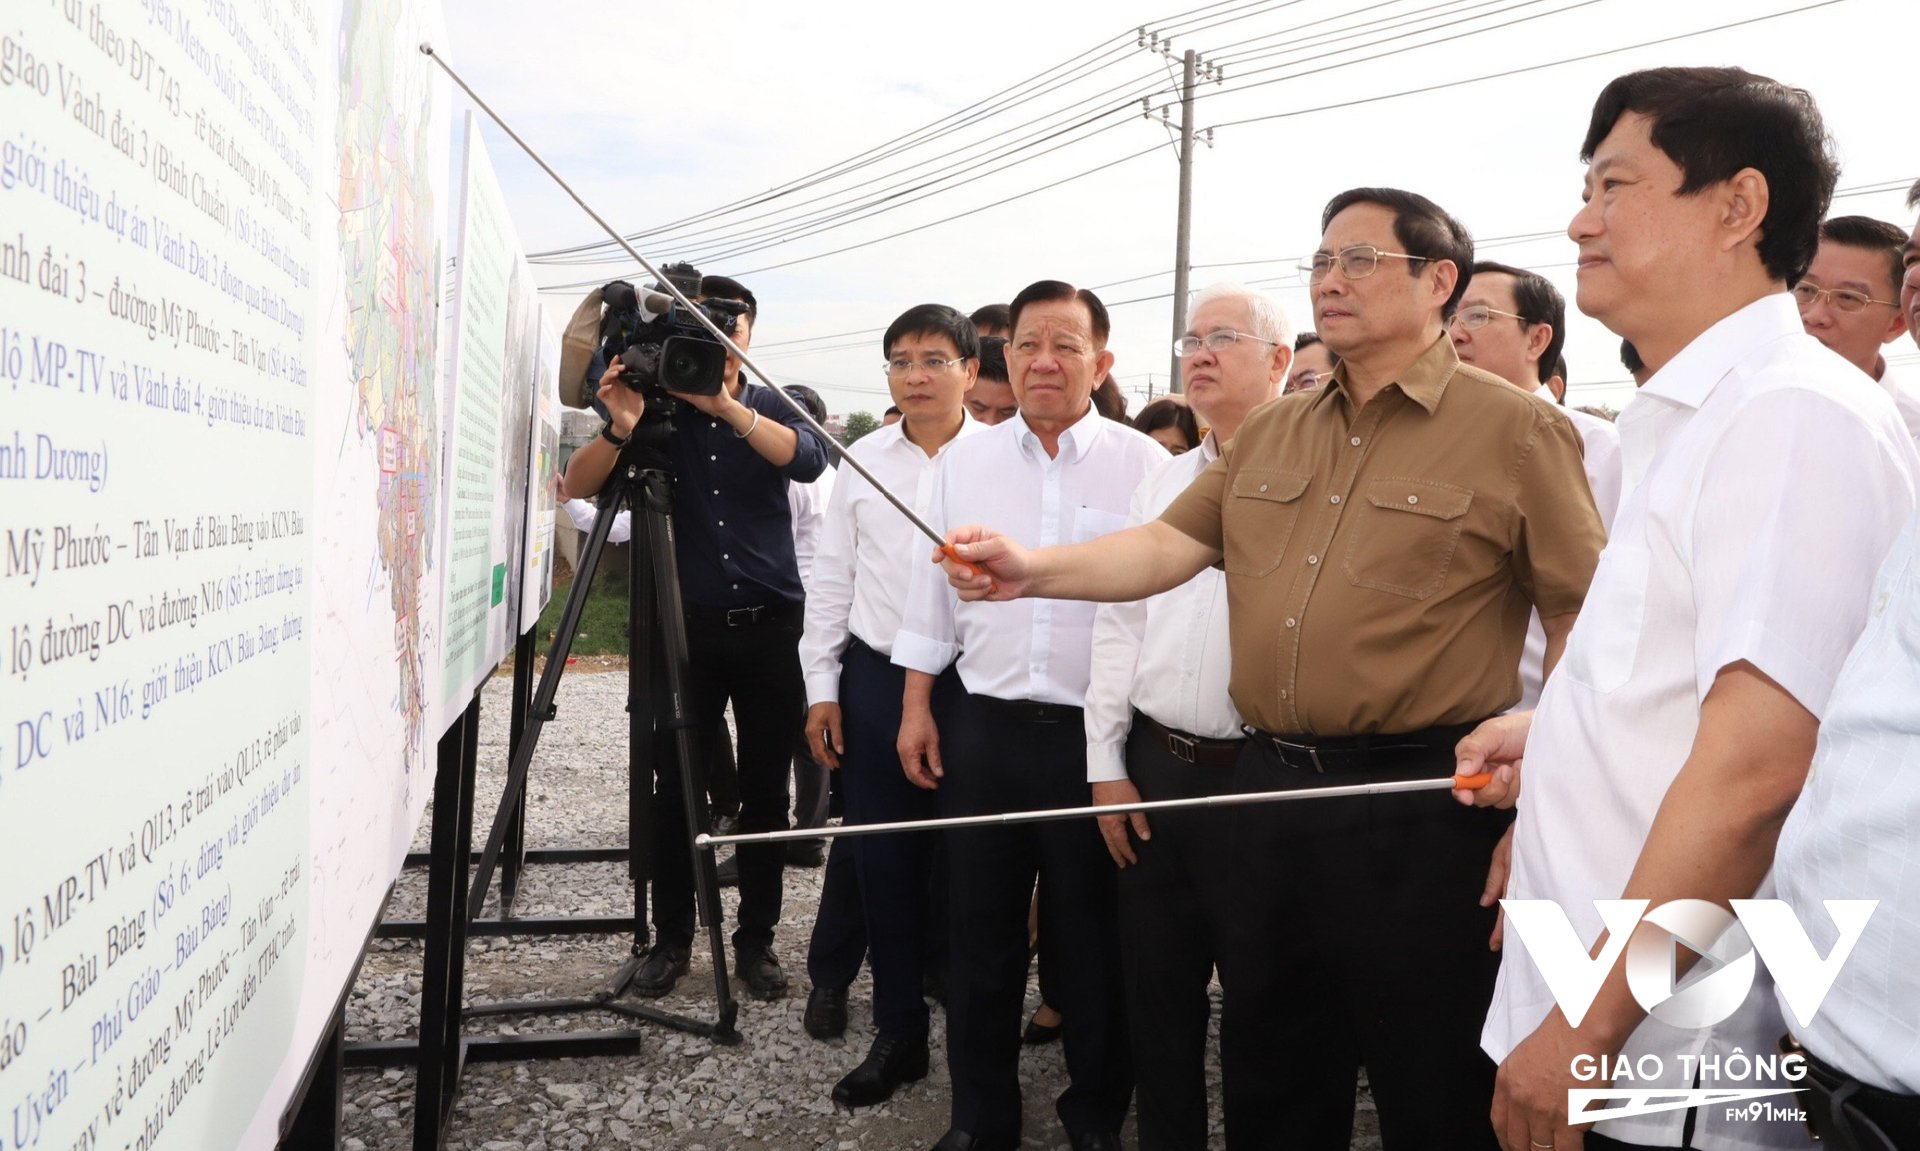 Thủ tướng Phạm Minh Chính nghe chủ tịch UBND tỉnh Võ Văn Minh báo cáo về quy hoạch và tiến độ chuẩn bị triển khai xây dựng đường cao tốc TP.HCM - Thủ Dầu Một - Chơn Thành.